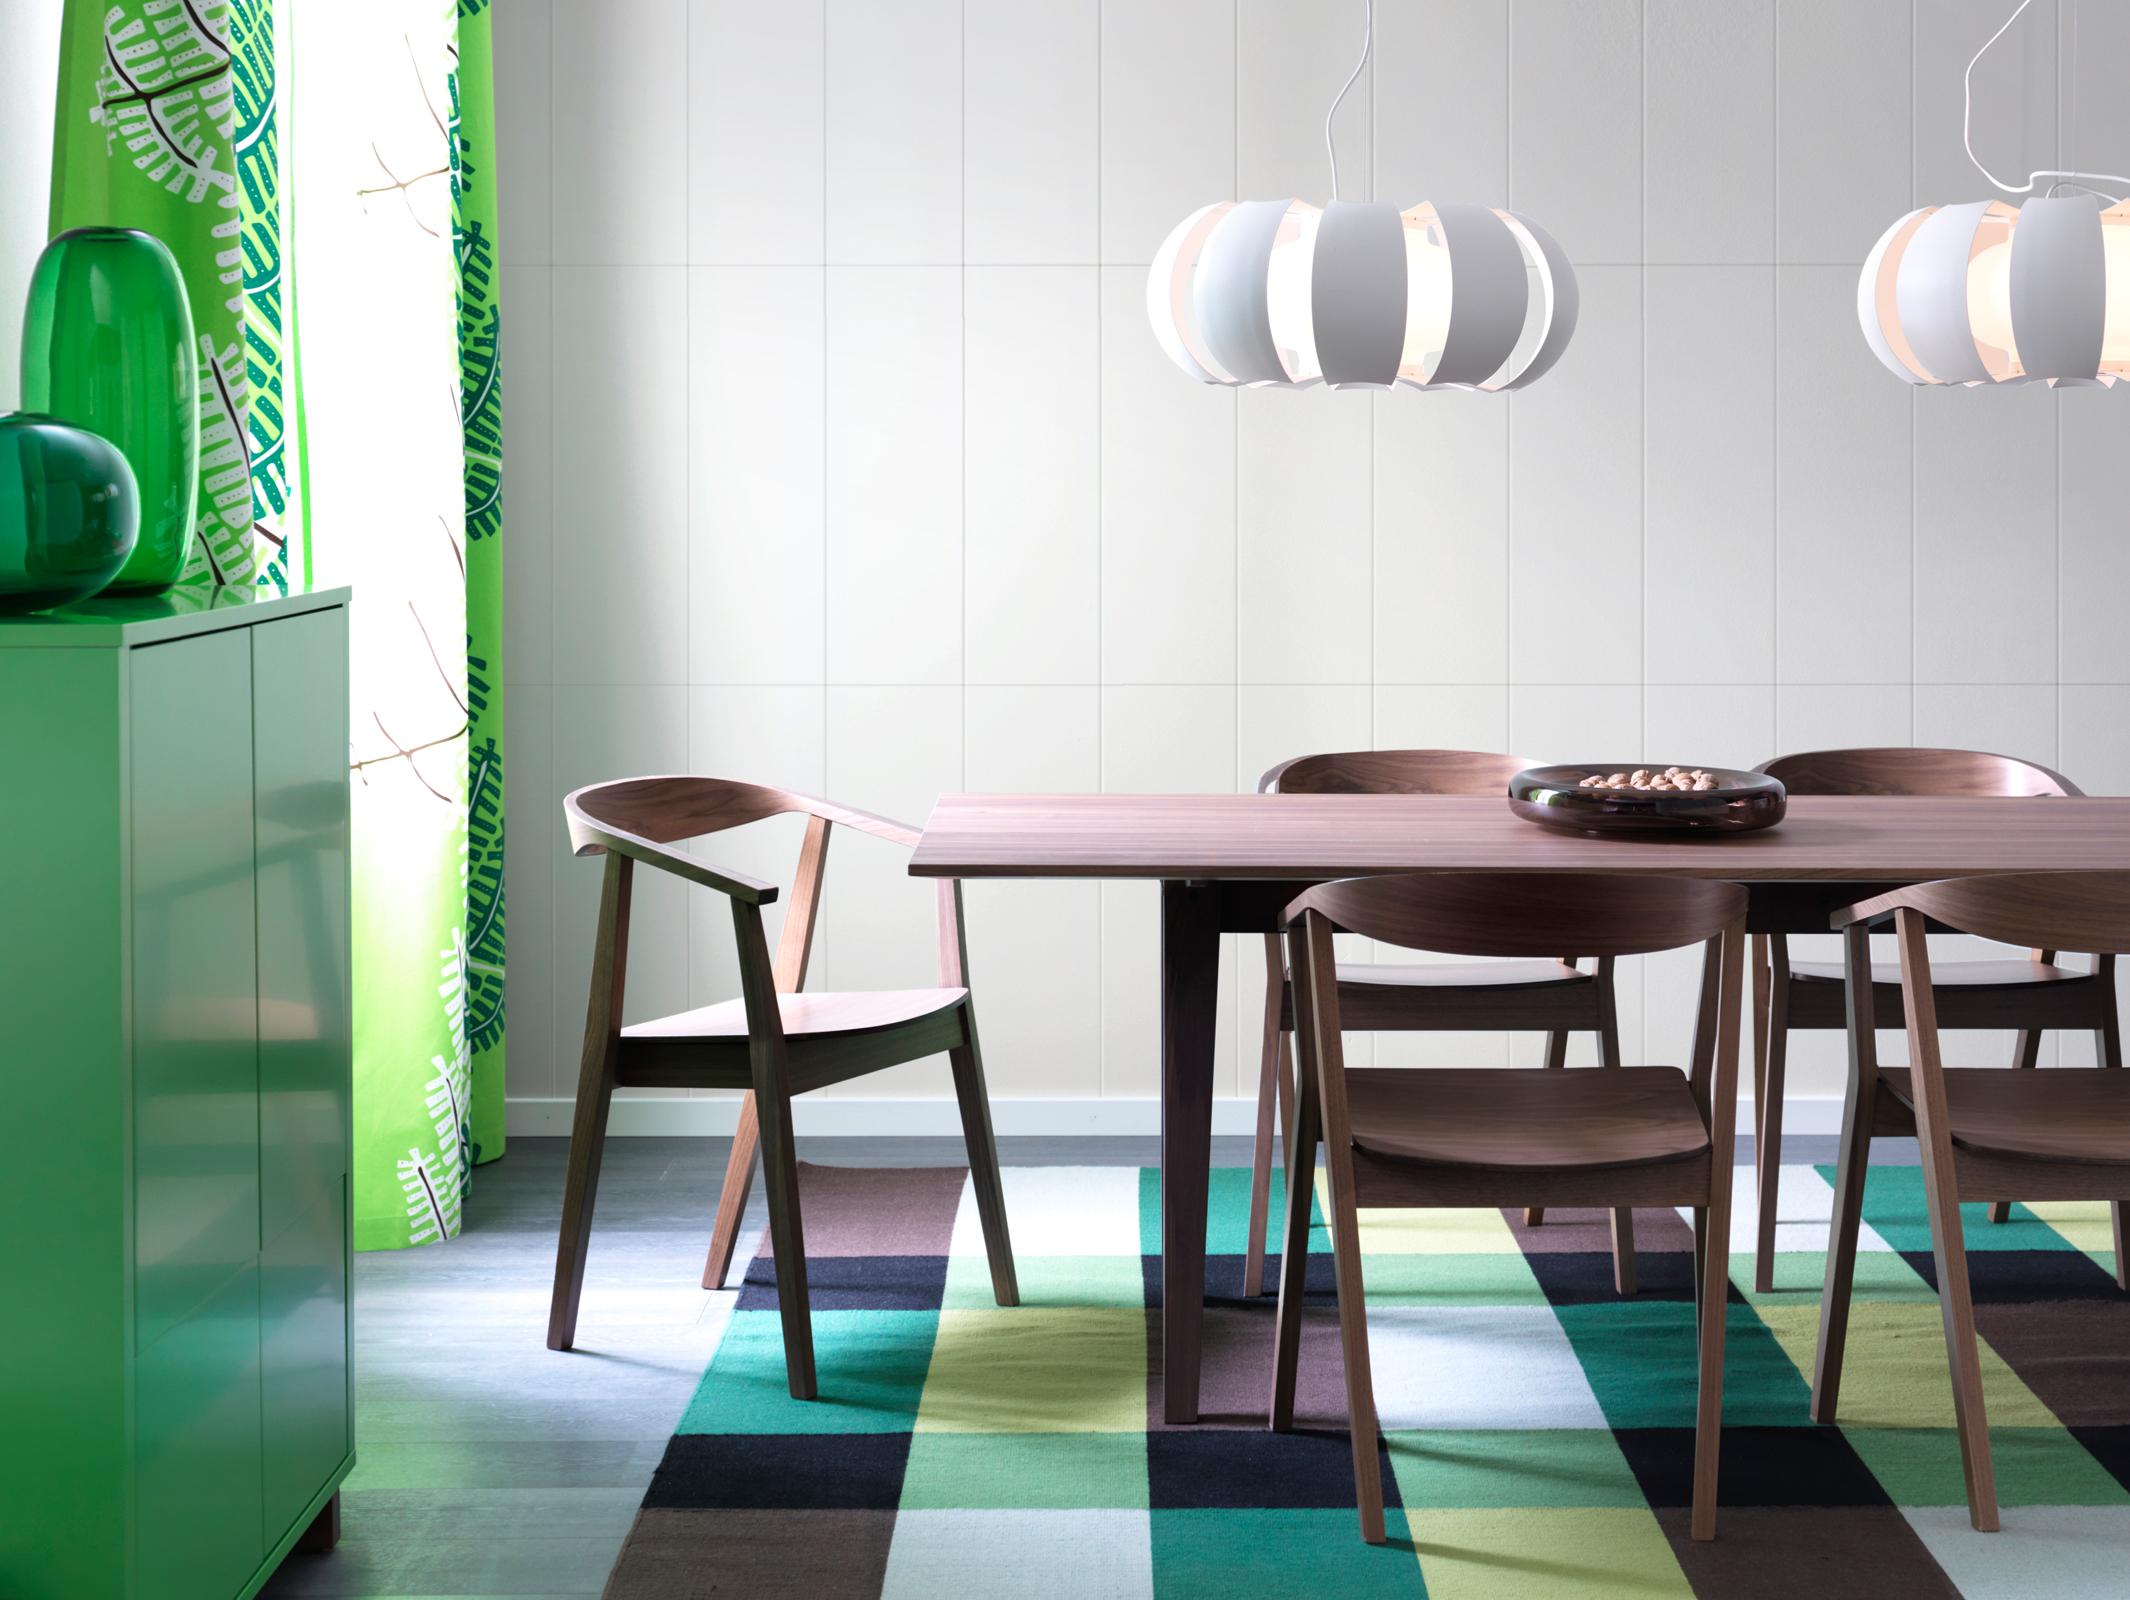 Esszimmer in Braun und Grün #teppich #esstisch #ikea #hängeleuchte #weißefliesen #grünevase ©Inter IKEA Systems B.V.